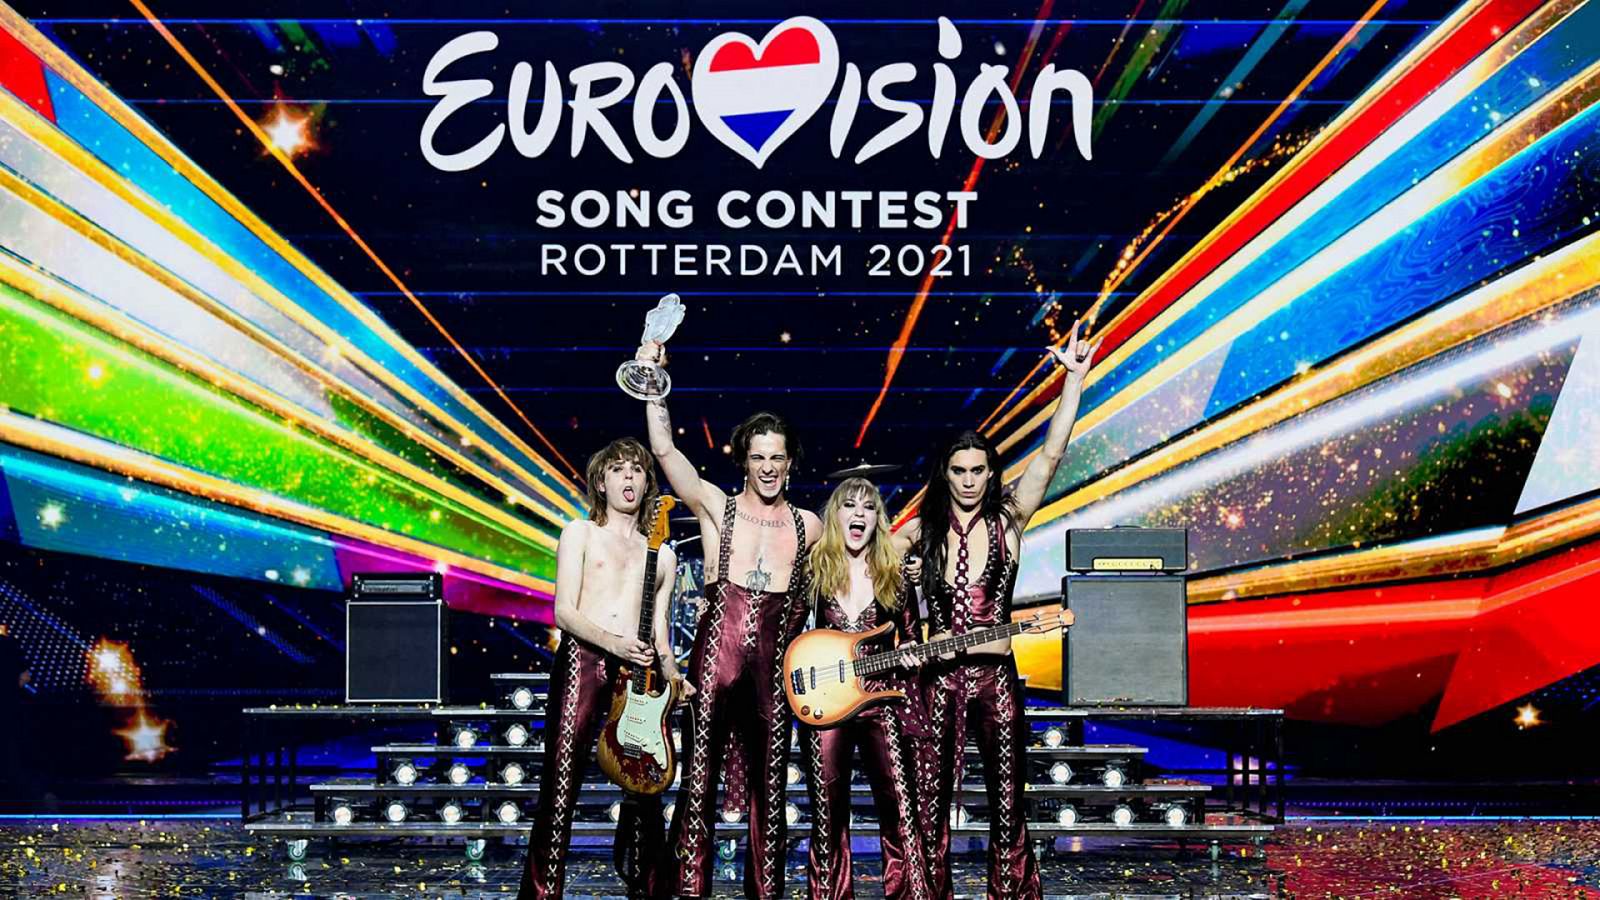 Eurovisión 2021: Final en RTVE.es